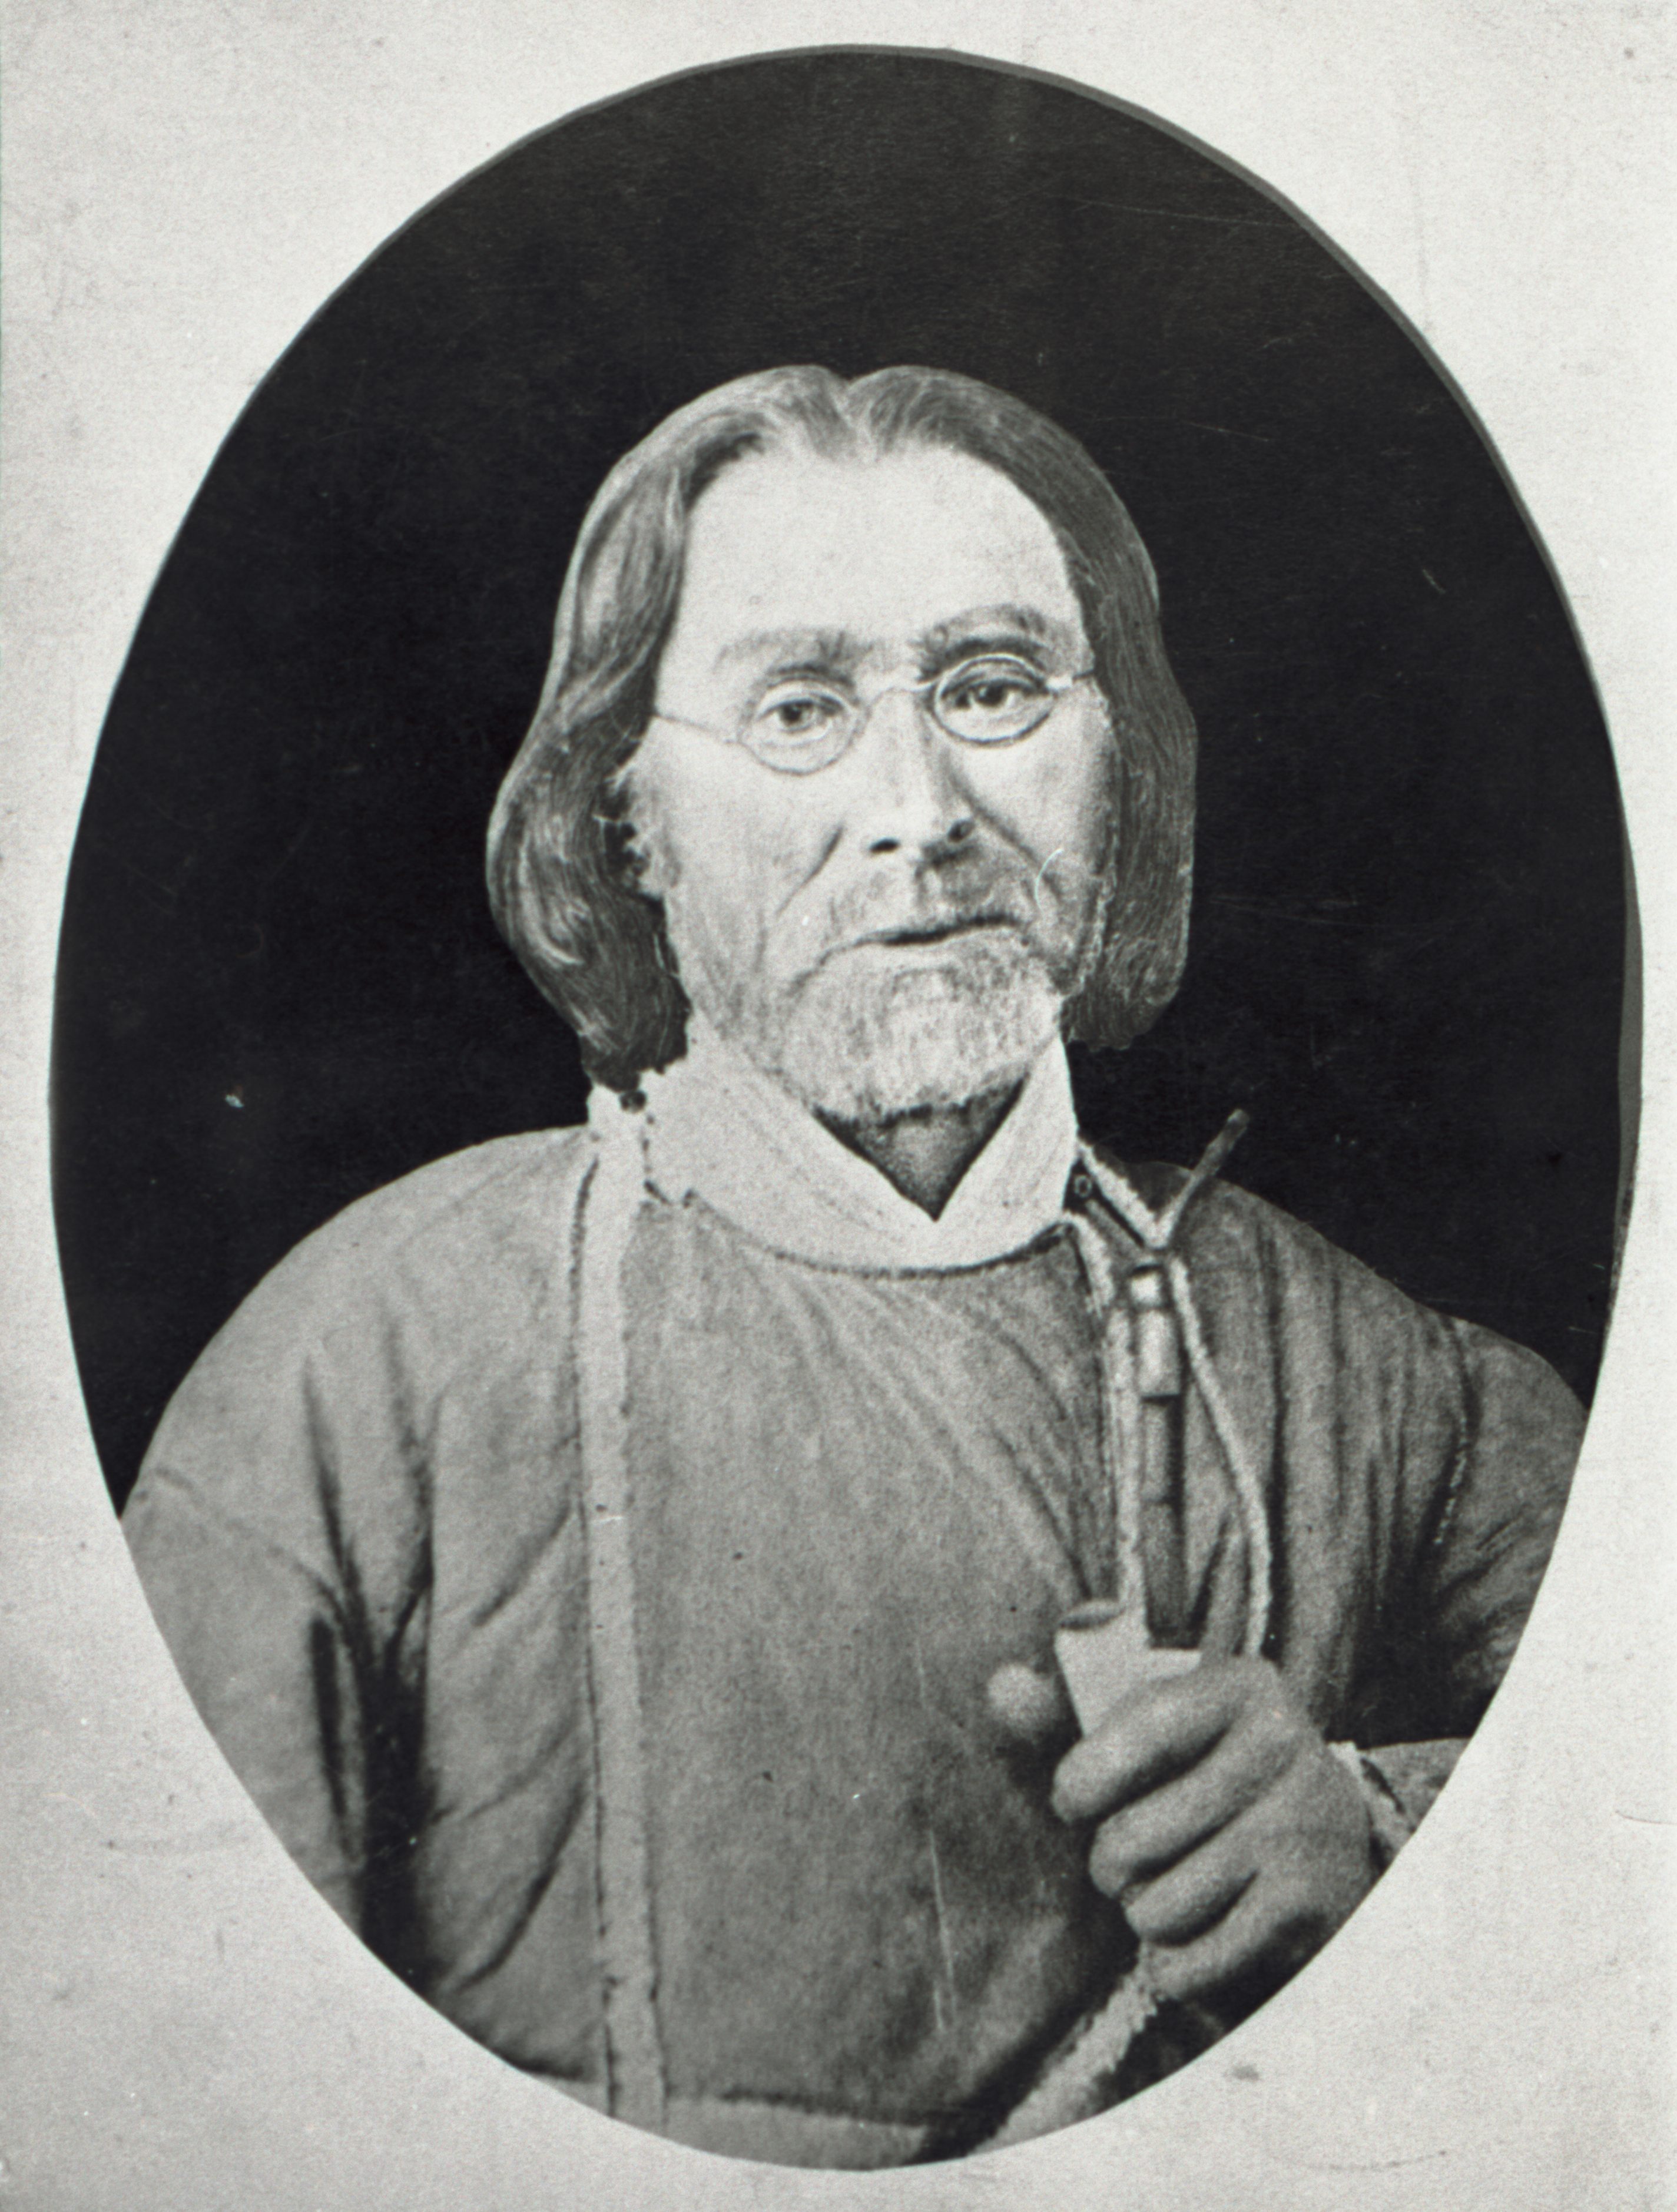 Peeter Kitzberg, August Kitzberg's father